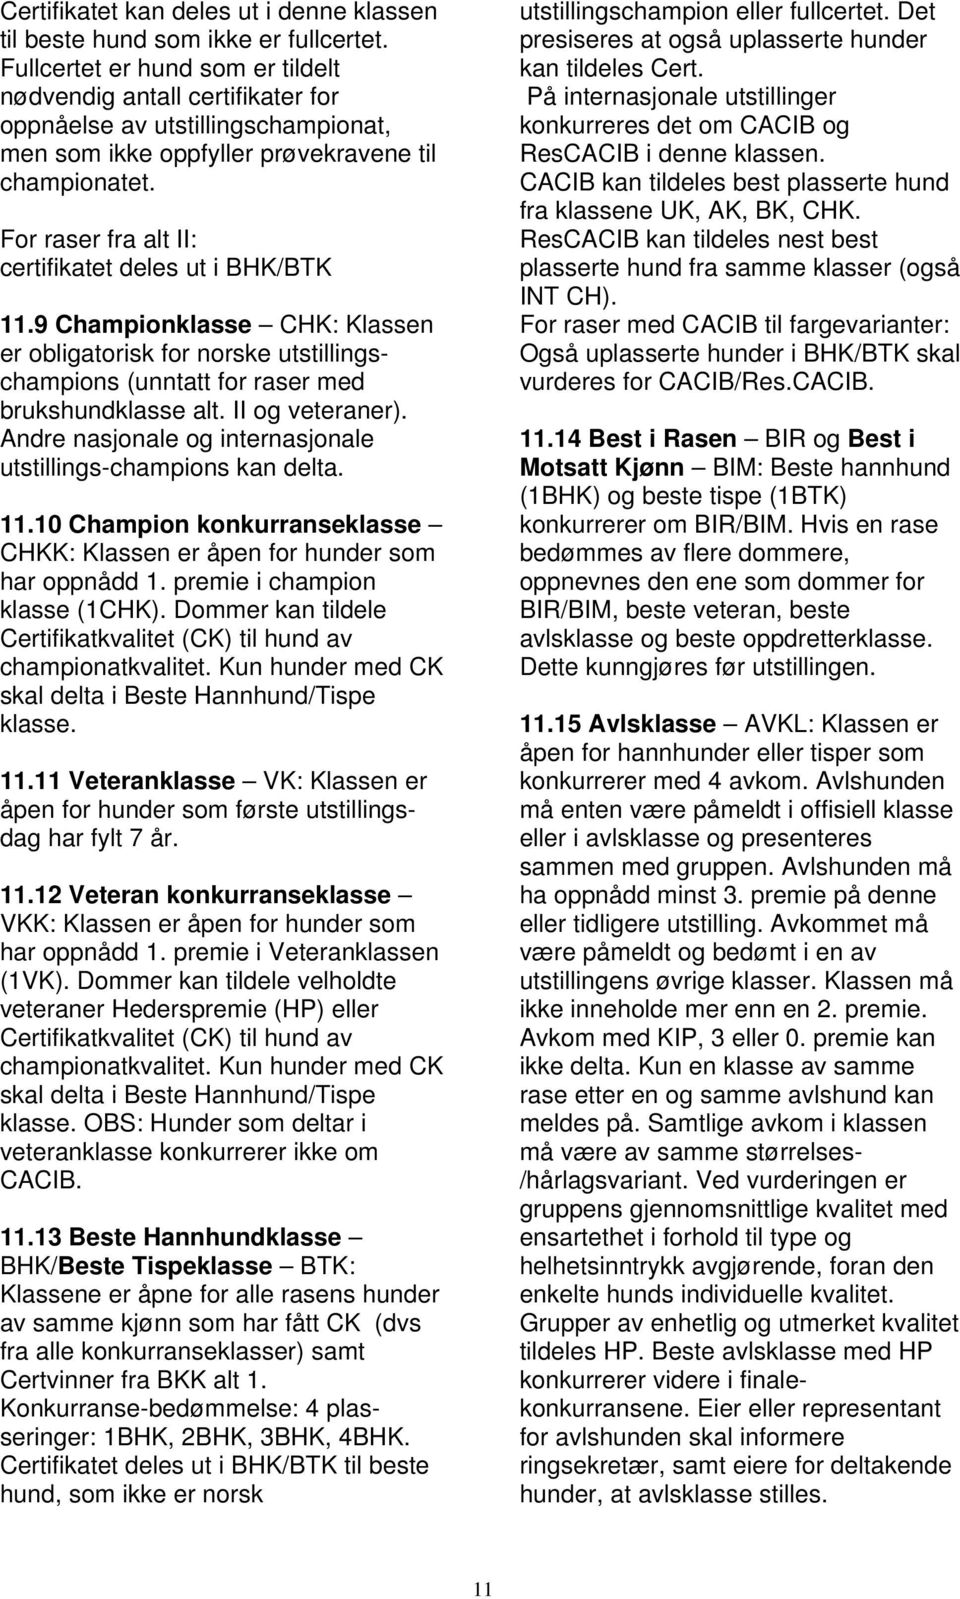 For raser fra alt II: certifikatet deles ut i BHK/BTK 11.9 Championklasse CHK: Klassen er obligatorisk for norske utstillingschampions (unntatt for raser med brukshundklasse alt. II og veteraner).